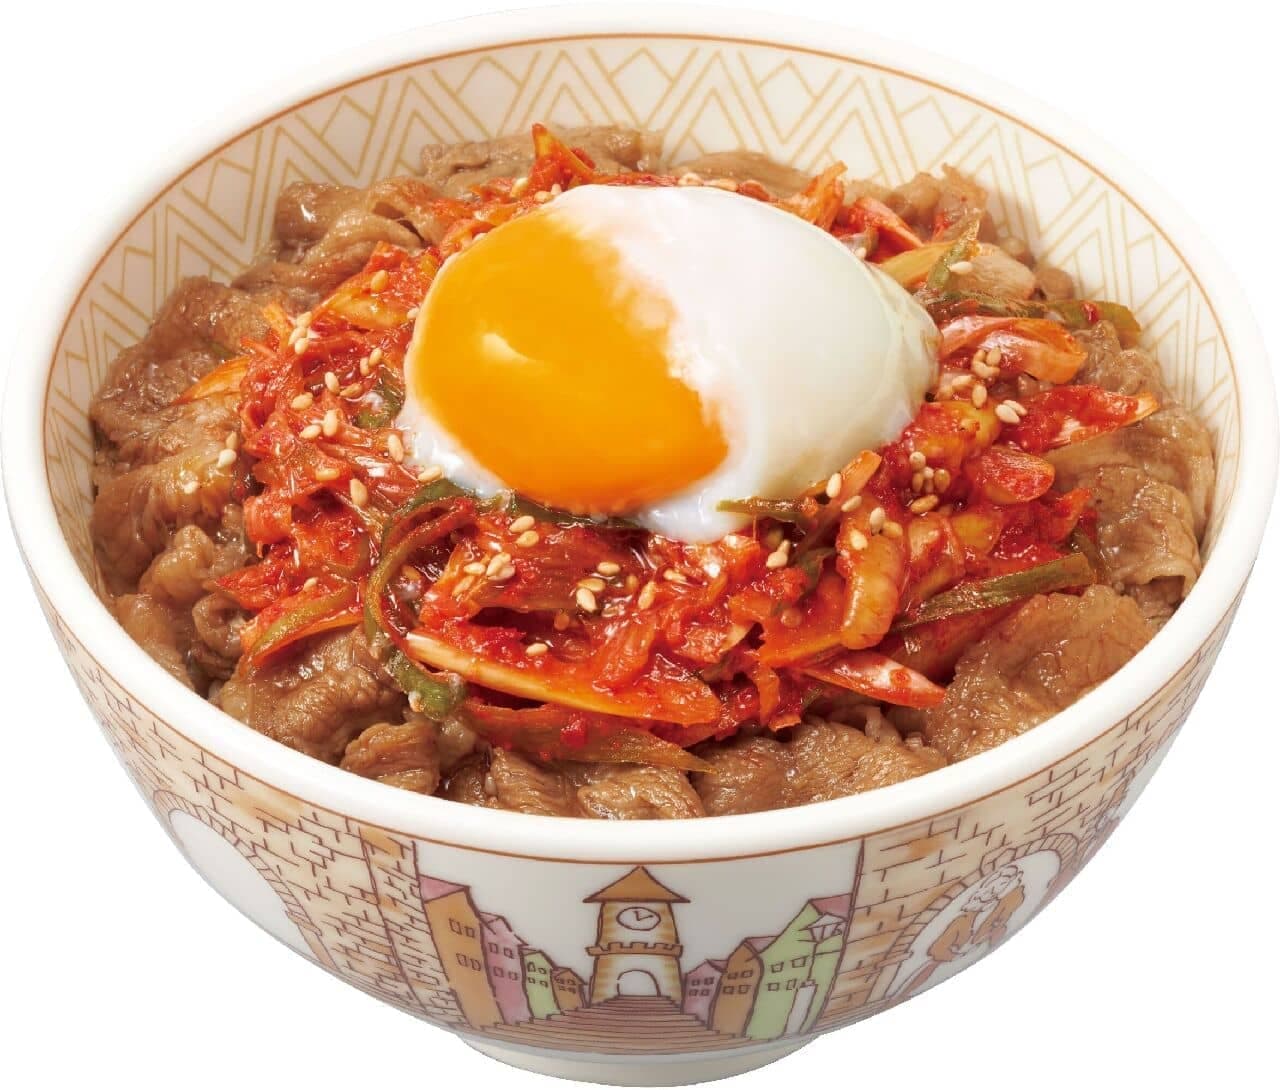 Sukiya "On-tamanegi kimchi gyudon" (beef bowl with onion and kimchi)